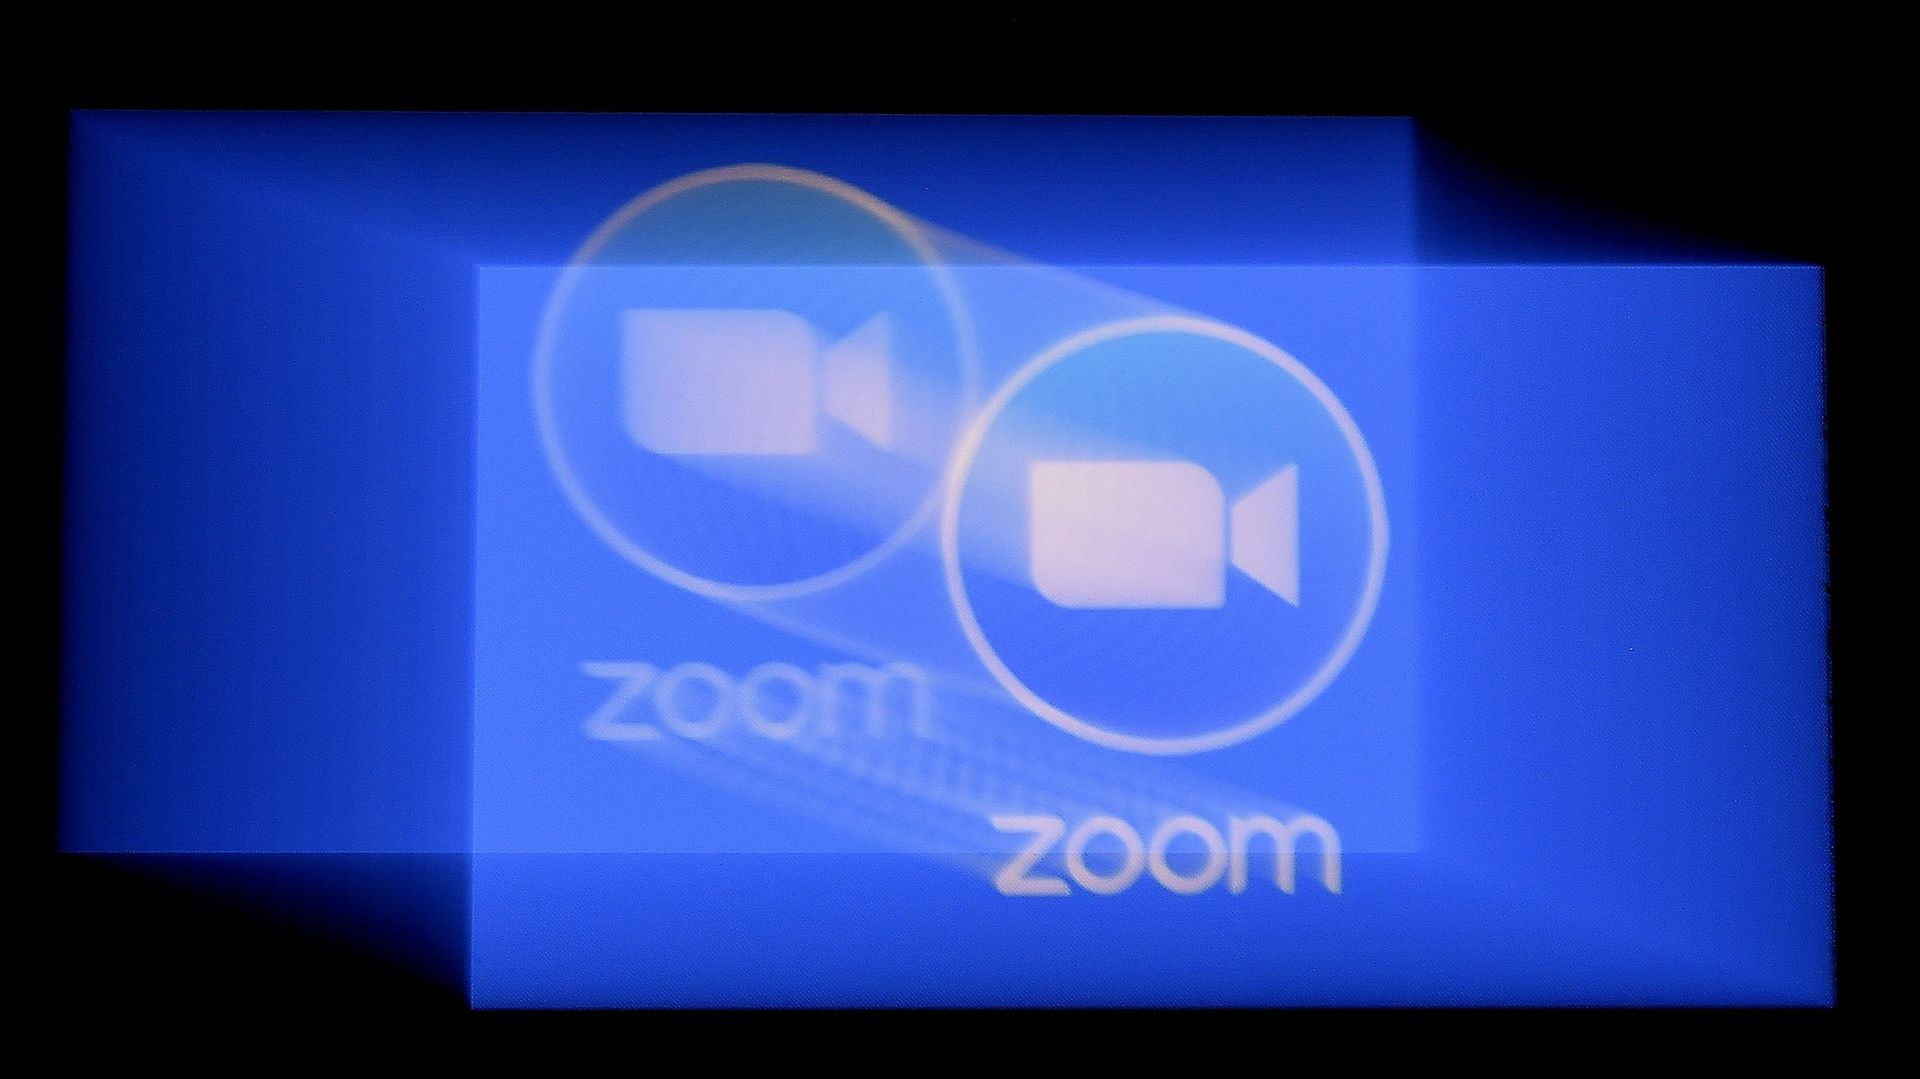 Zoom est une plateforme dédiée aux réunions de groupe en ligne, il a été piraté ce jeudi lors d'une réunion de députés sud africains. 